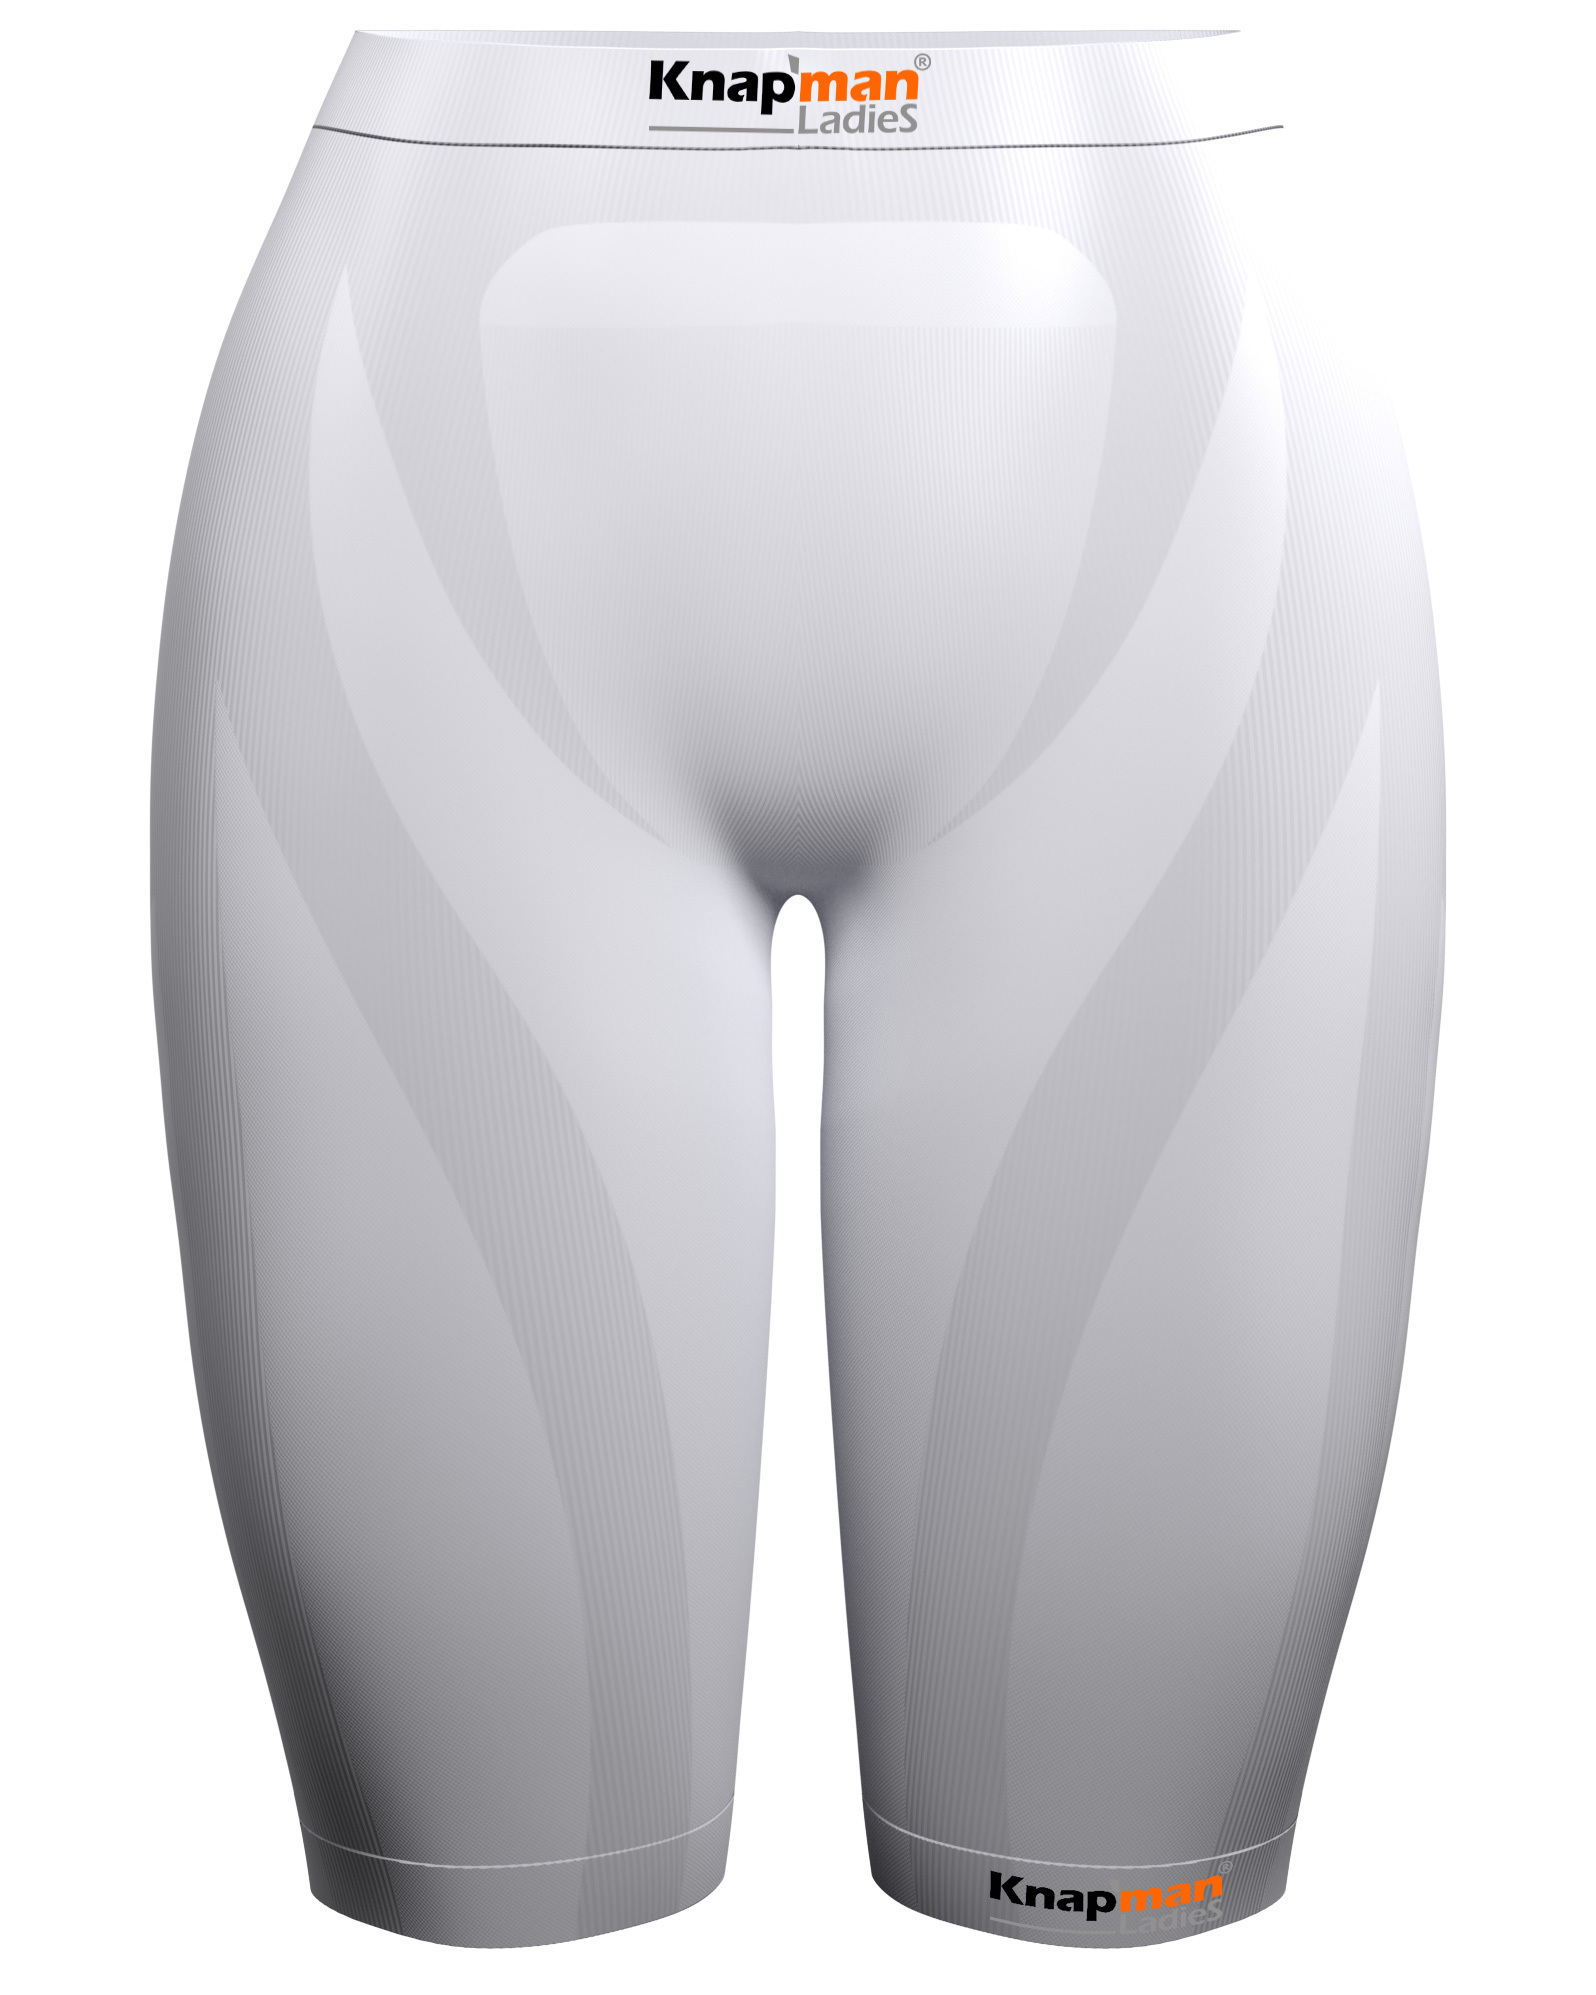 Knapman Ladies Compression Short 45% white - Knapman Compression Shorts -  women - NIEUWE STRUCTUUR